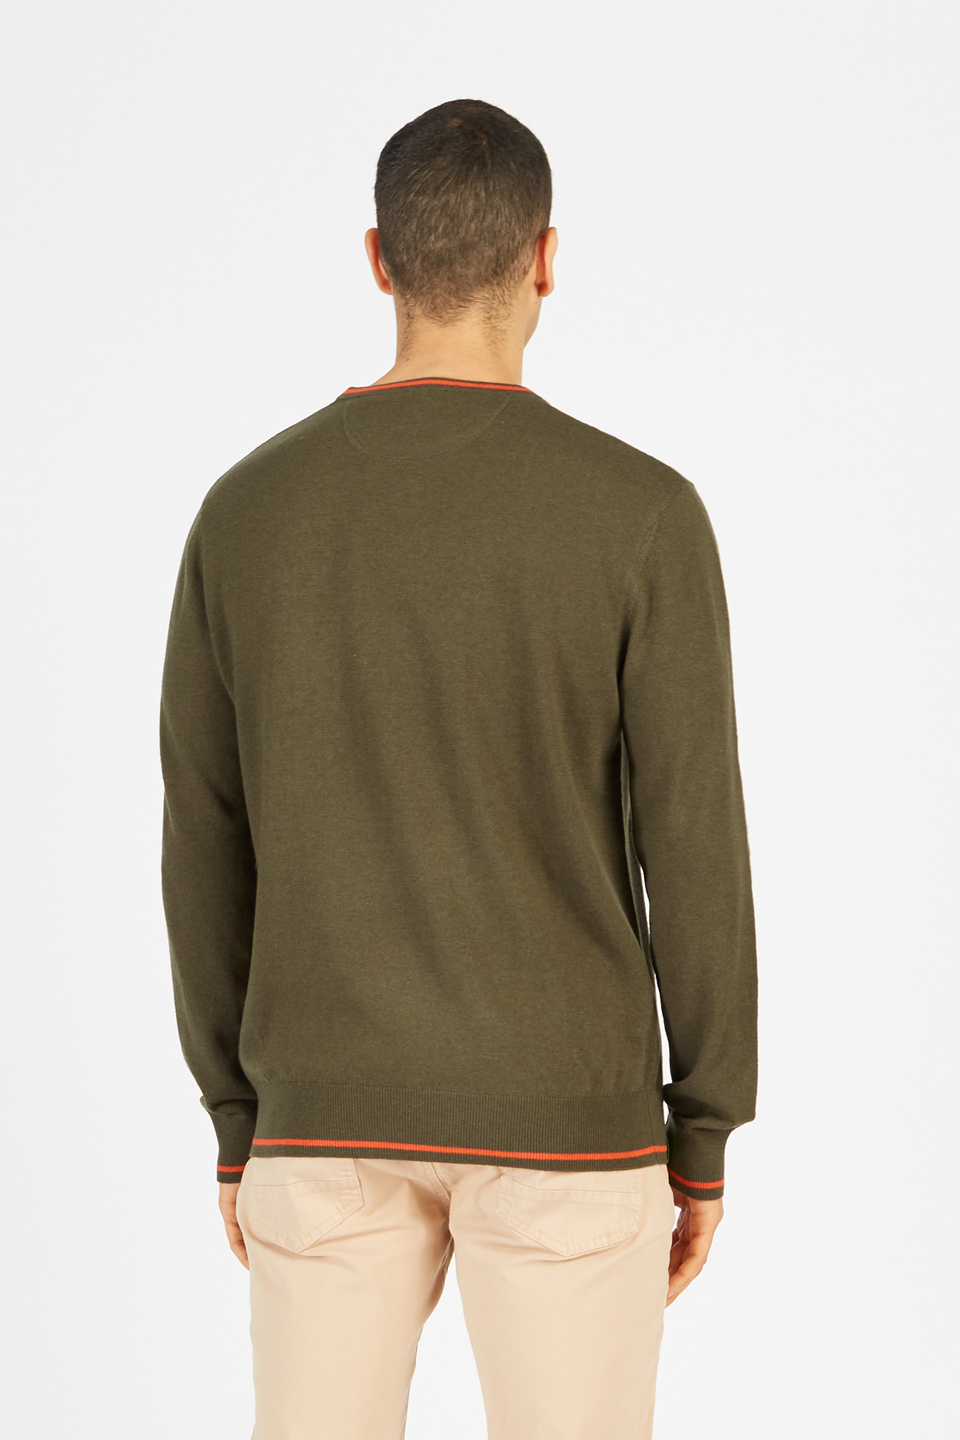 Maglione tricot da uomo in lambscot girocollo regular fit | La Martina - Official Online Shop